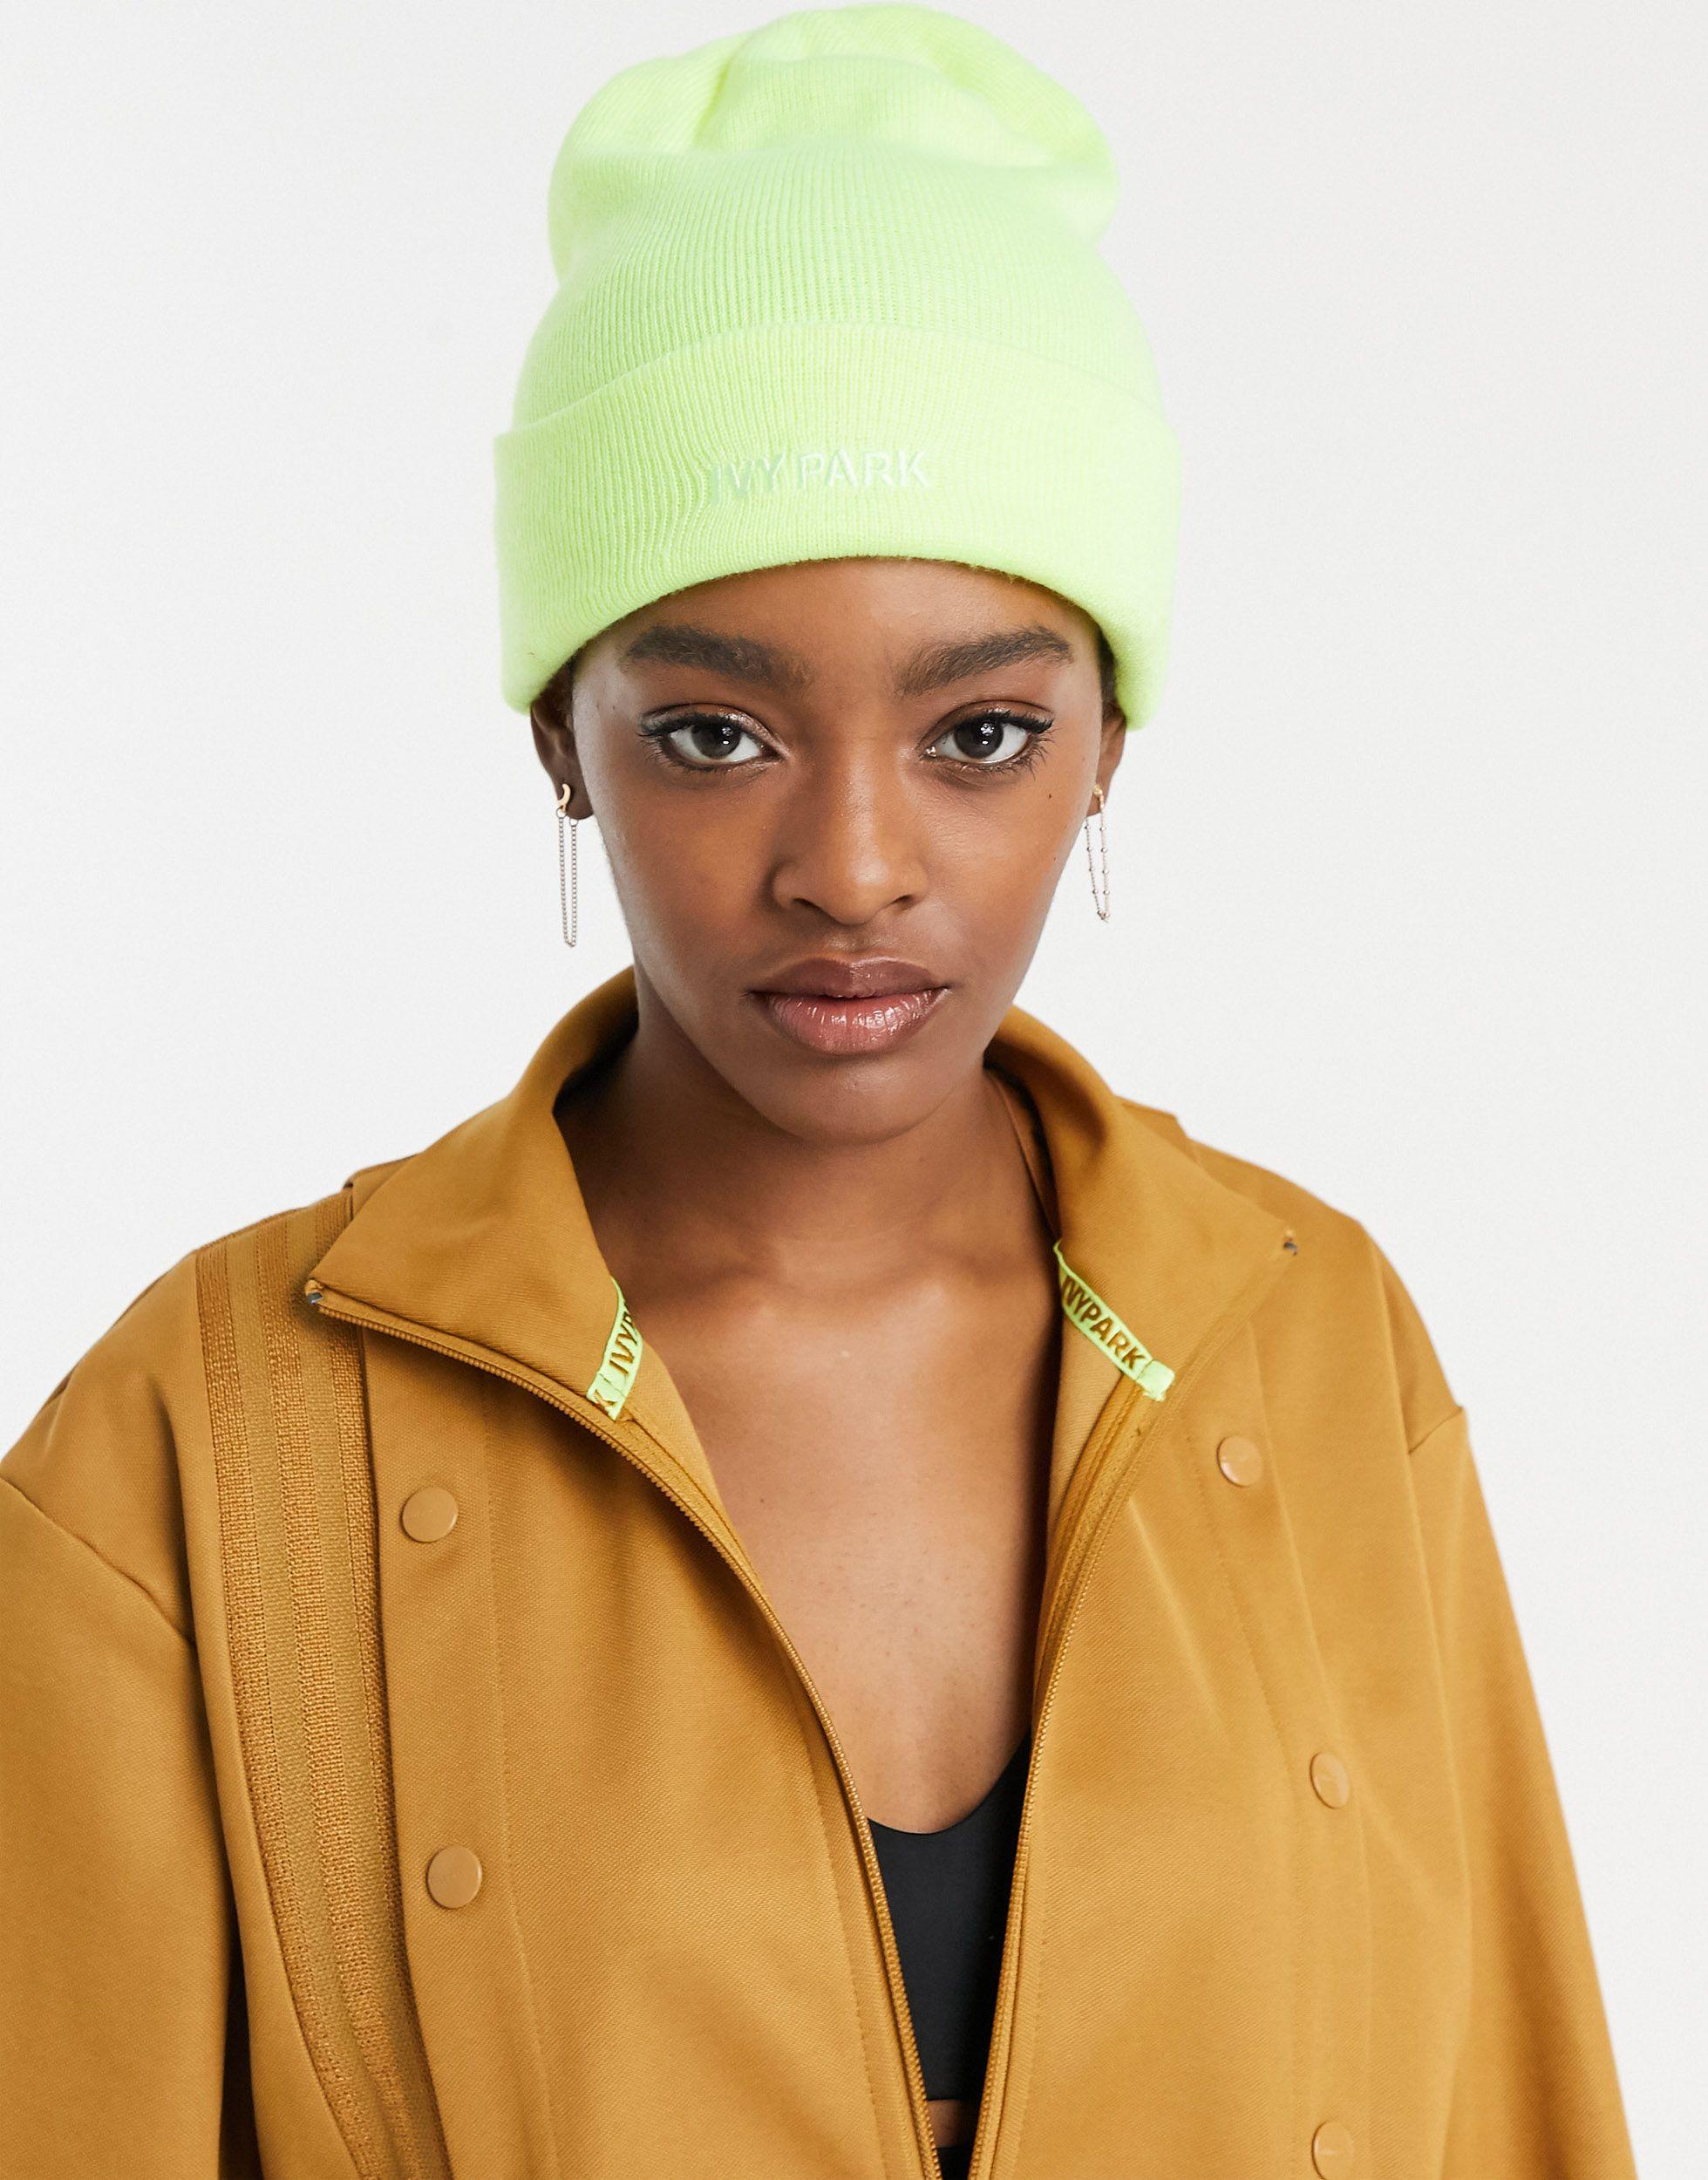 الإيدز امراة جميلة تاج فعالية الانغماس في الذات لاستكمال bonnet jaune adidas  - sarlat-onair.com